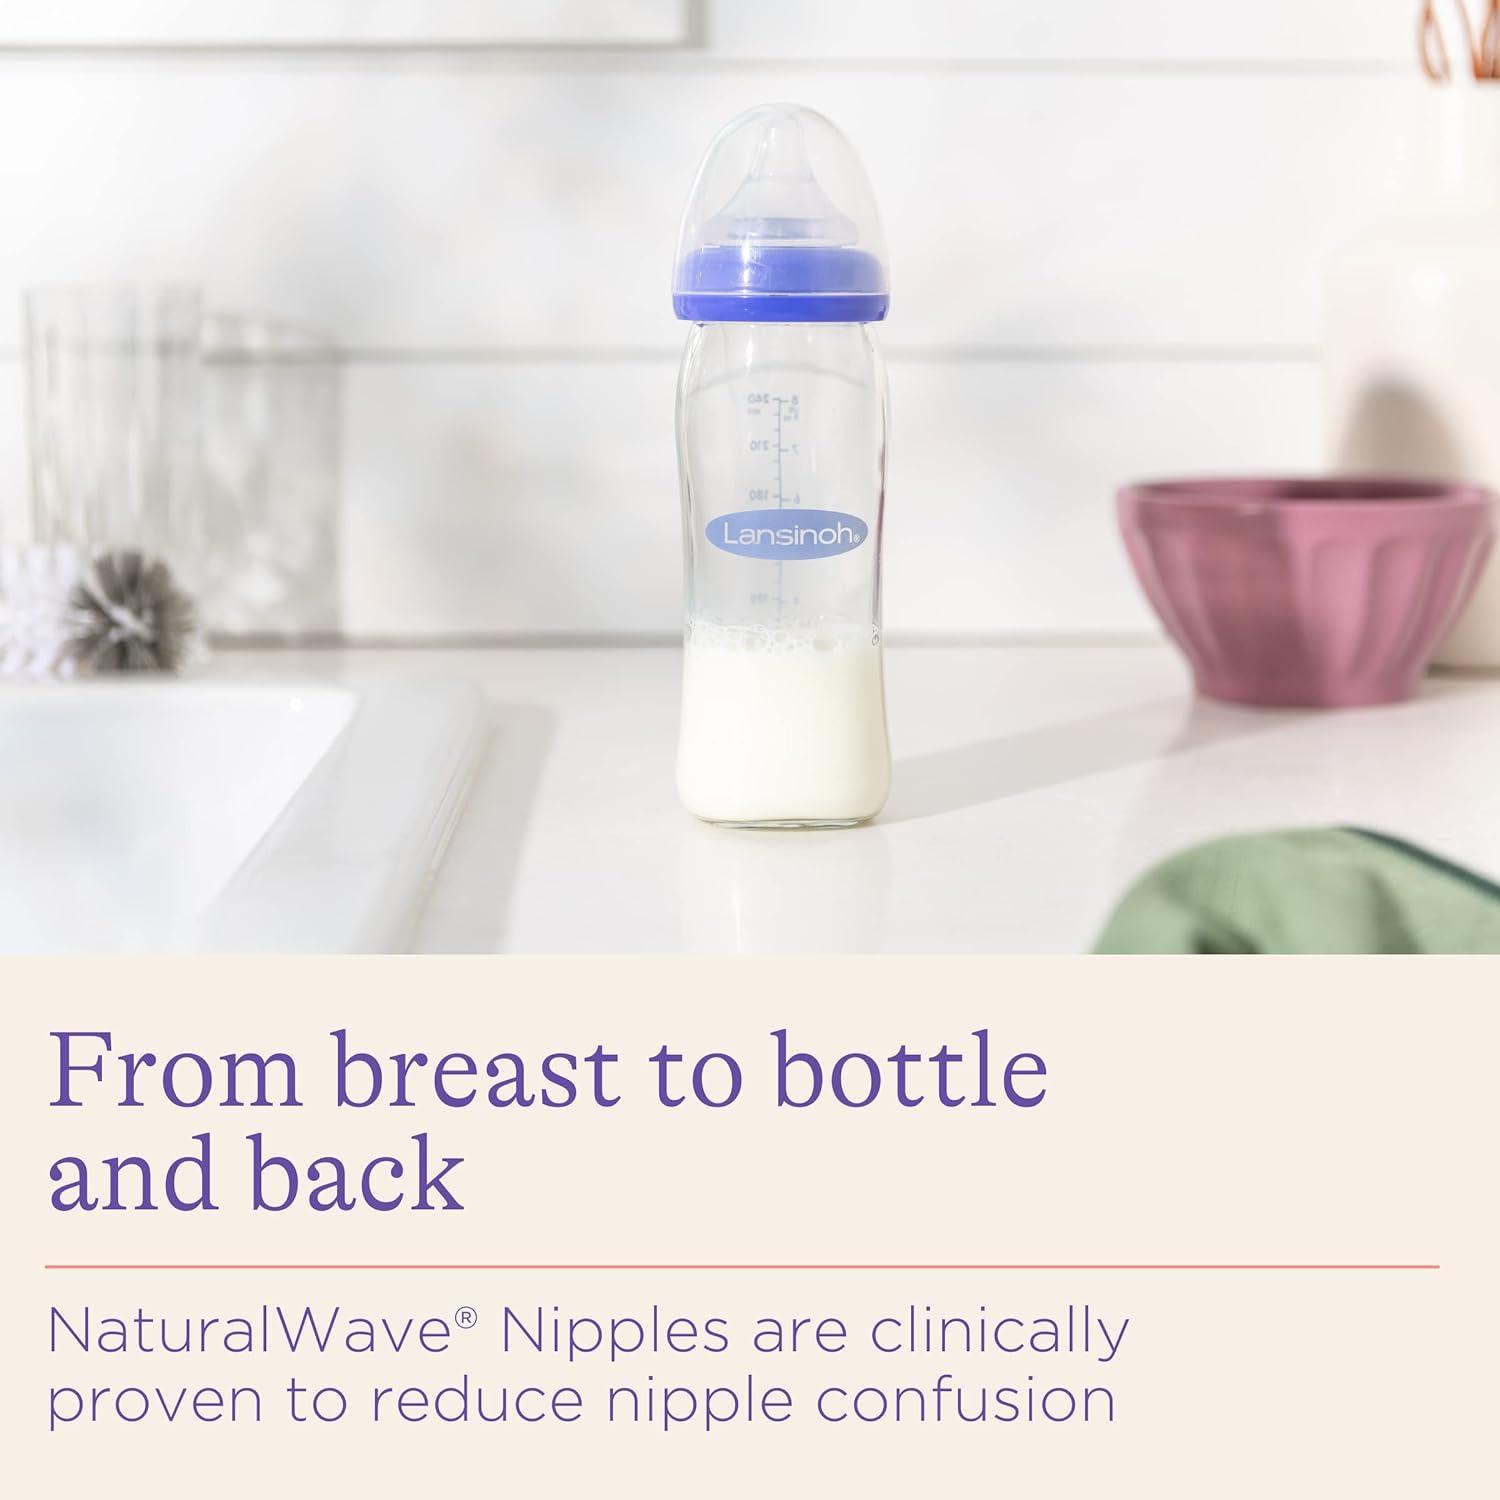 Lansinoh Breastmilk Feeding Glass Bottle, 8 Oz